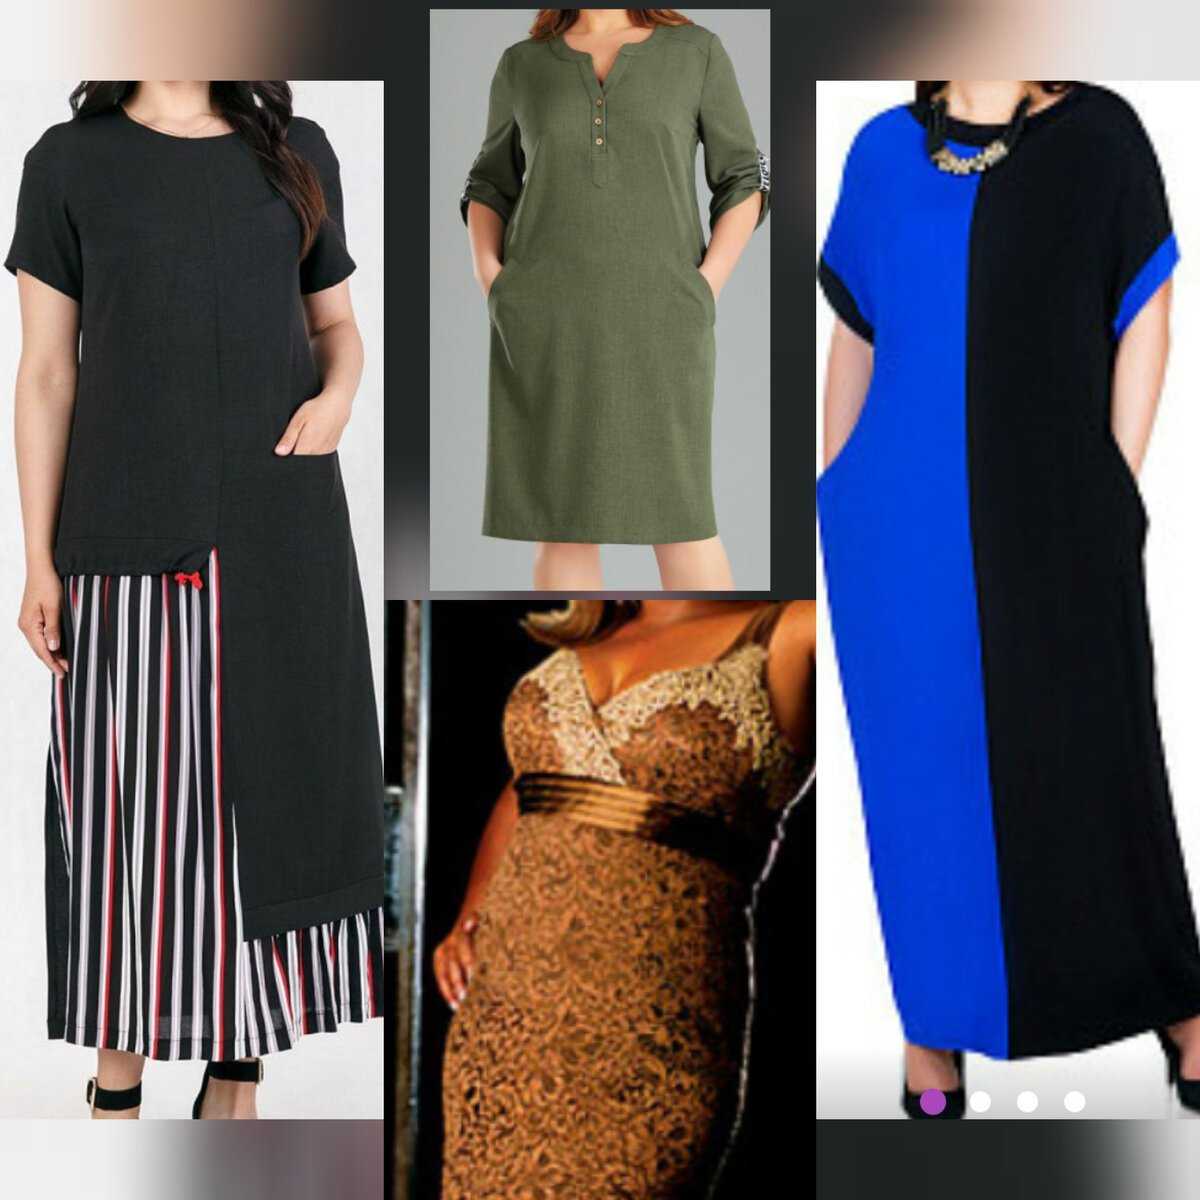 Что носить если тип фигуры "яблоко": фото платьев, блузок, юбок и другой подходящей одежды